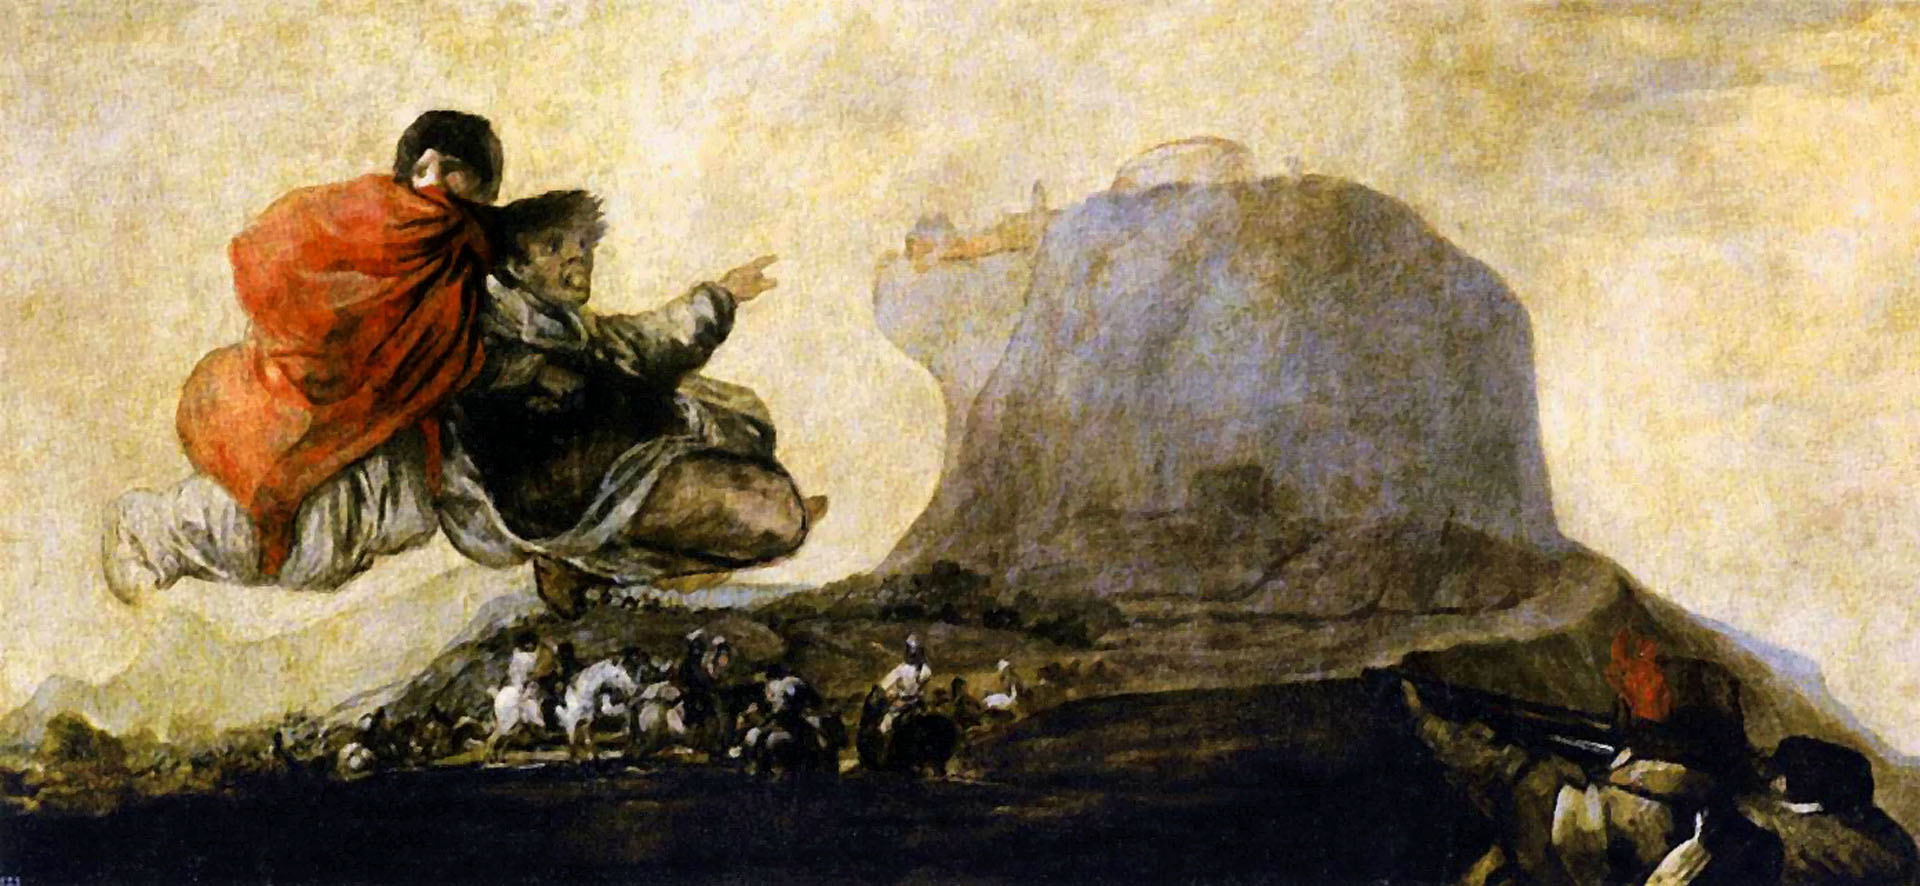 Fantastic Vision Black Painting - Francisco Goya Wallpaper Image